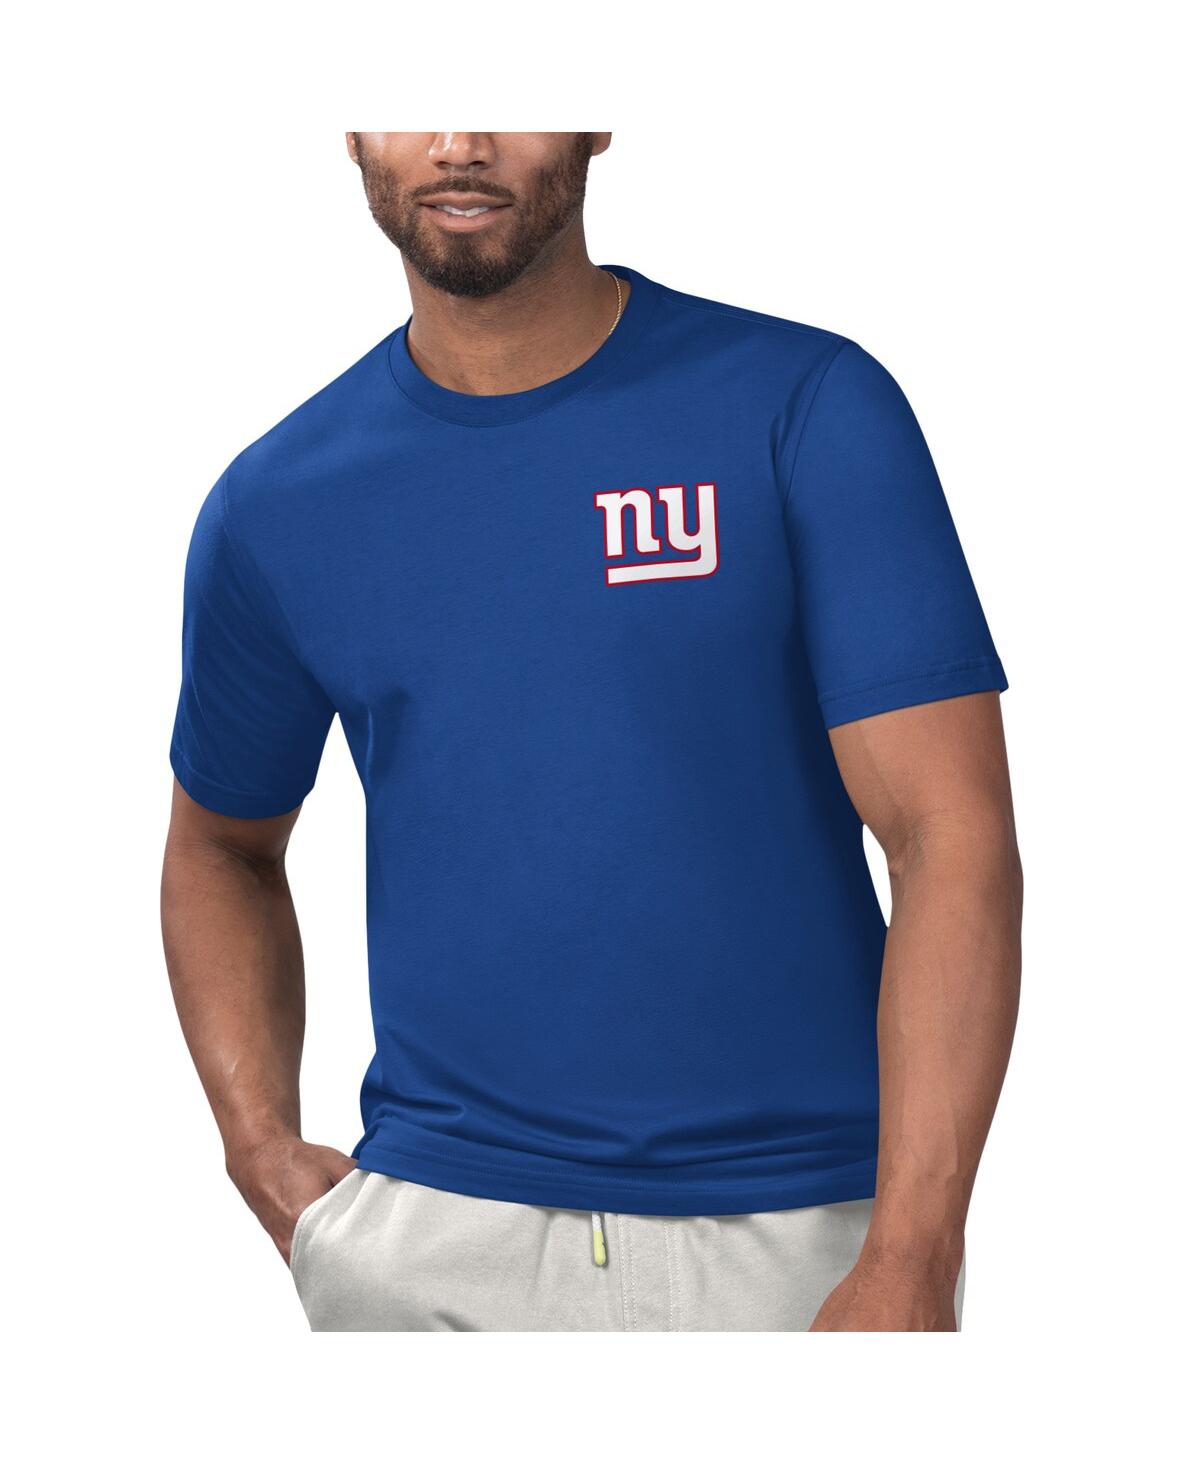 Men's Margaritaville Royal New York Giants Licensed to Chill T-shirt - Royal